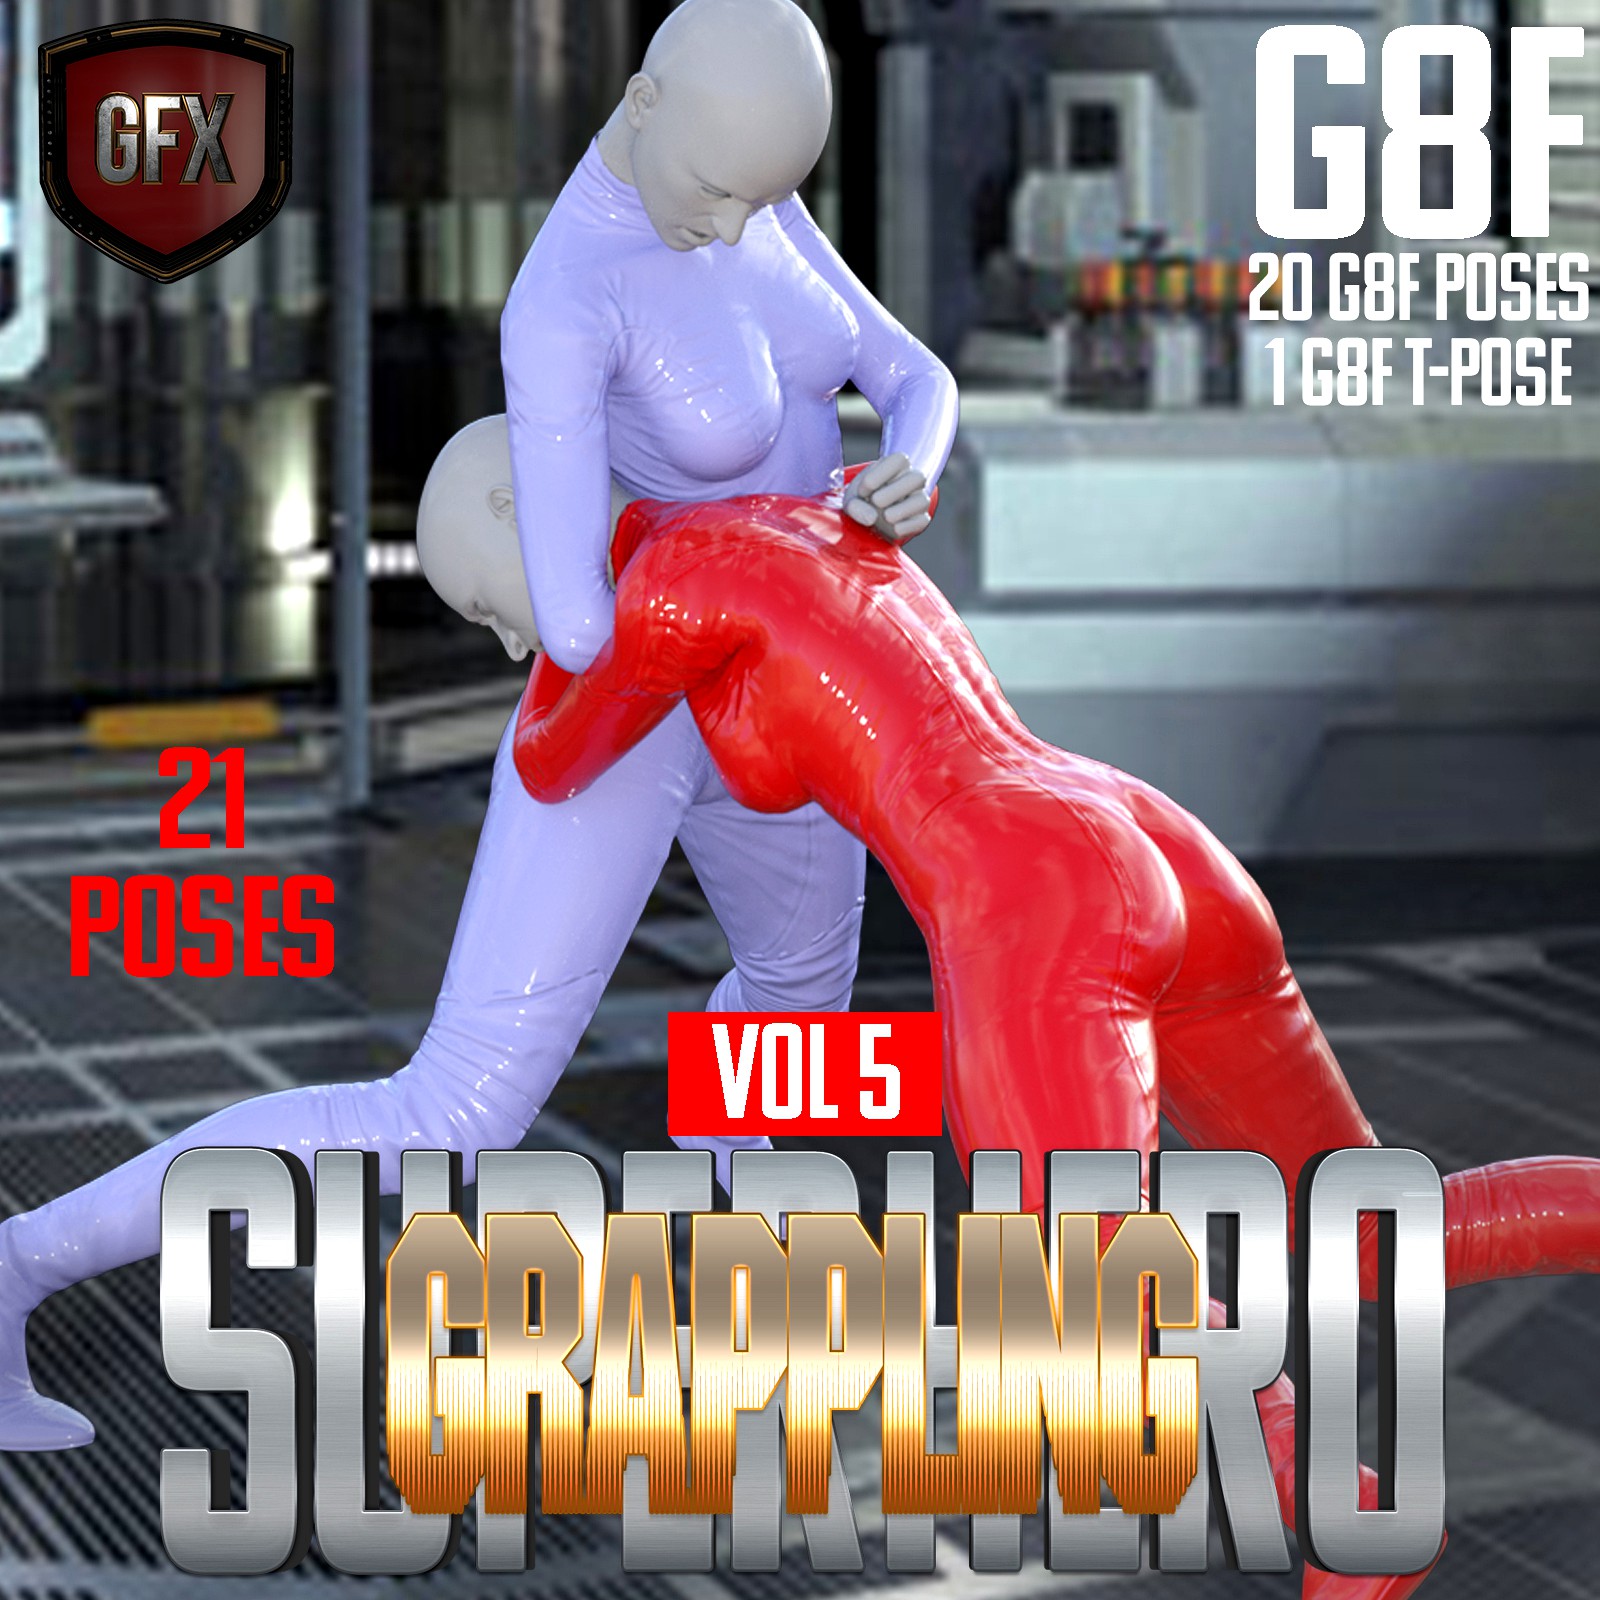 SuperHero Grappling for G8F Volume 5